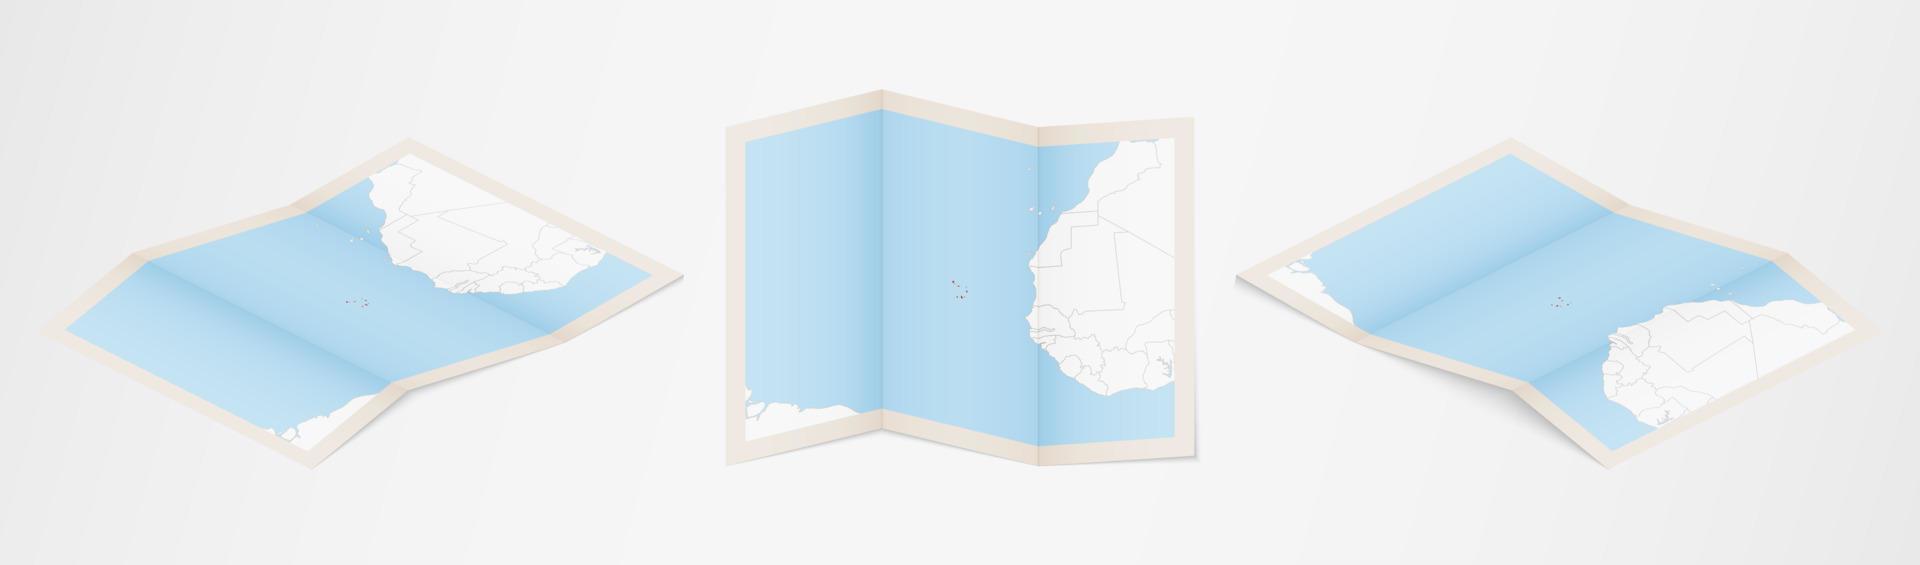 Faltkarte von Kap Verde in drei verschiedenen Versionen. vektor